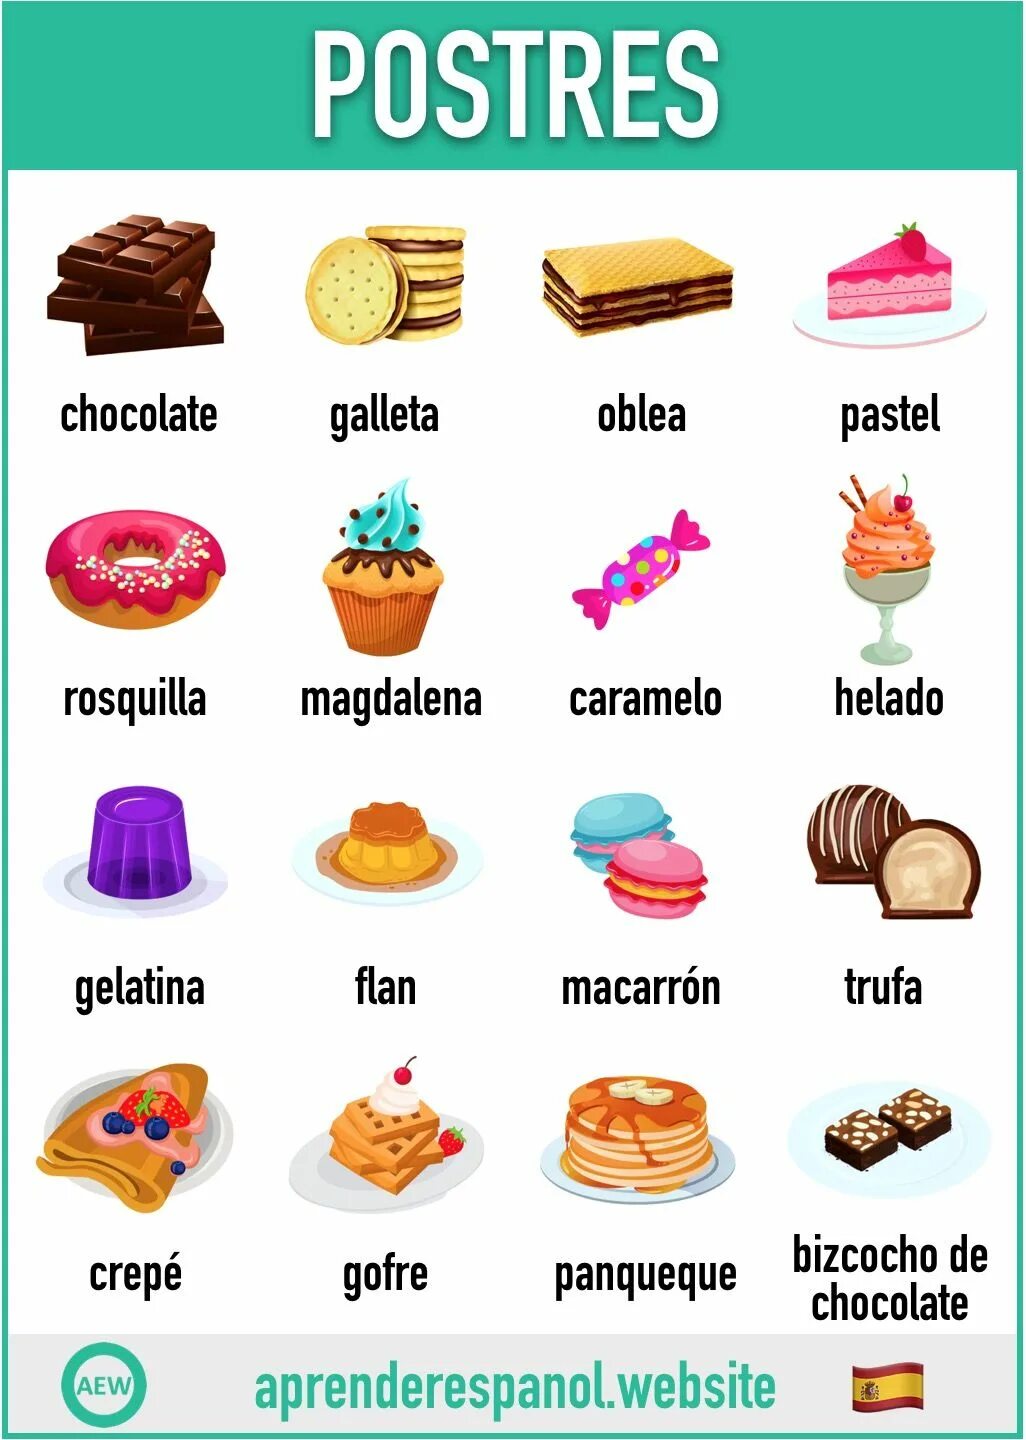 Названия сладостей. Сладости на испанском языке. Названия продуктов на испанском языке. Сладости по английскому.